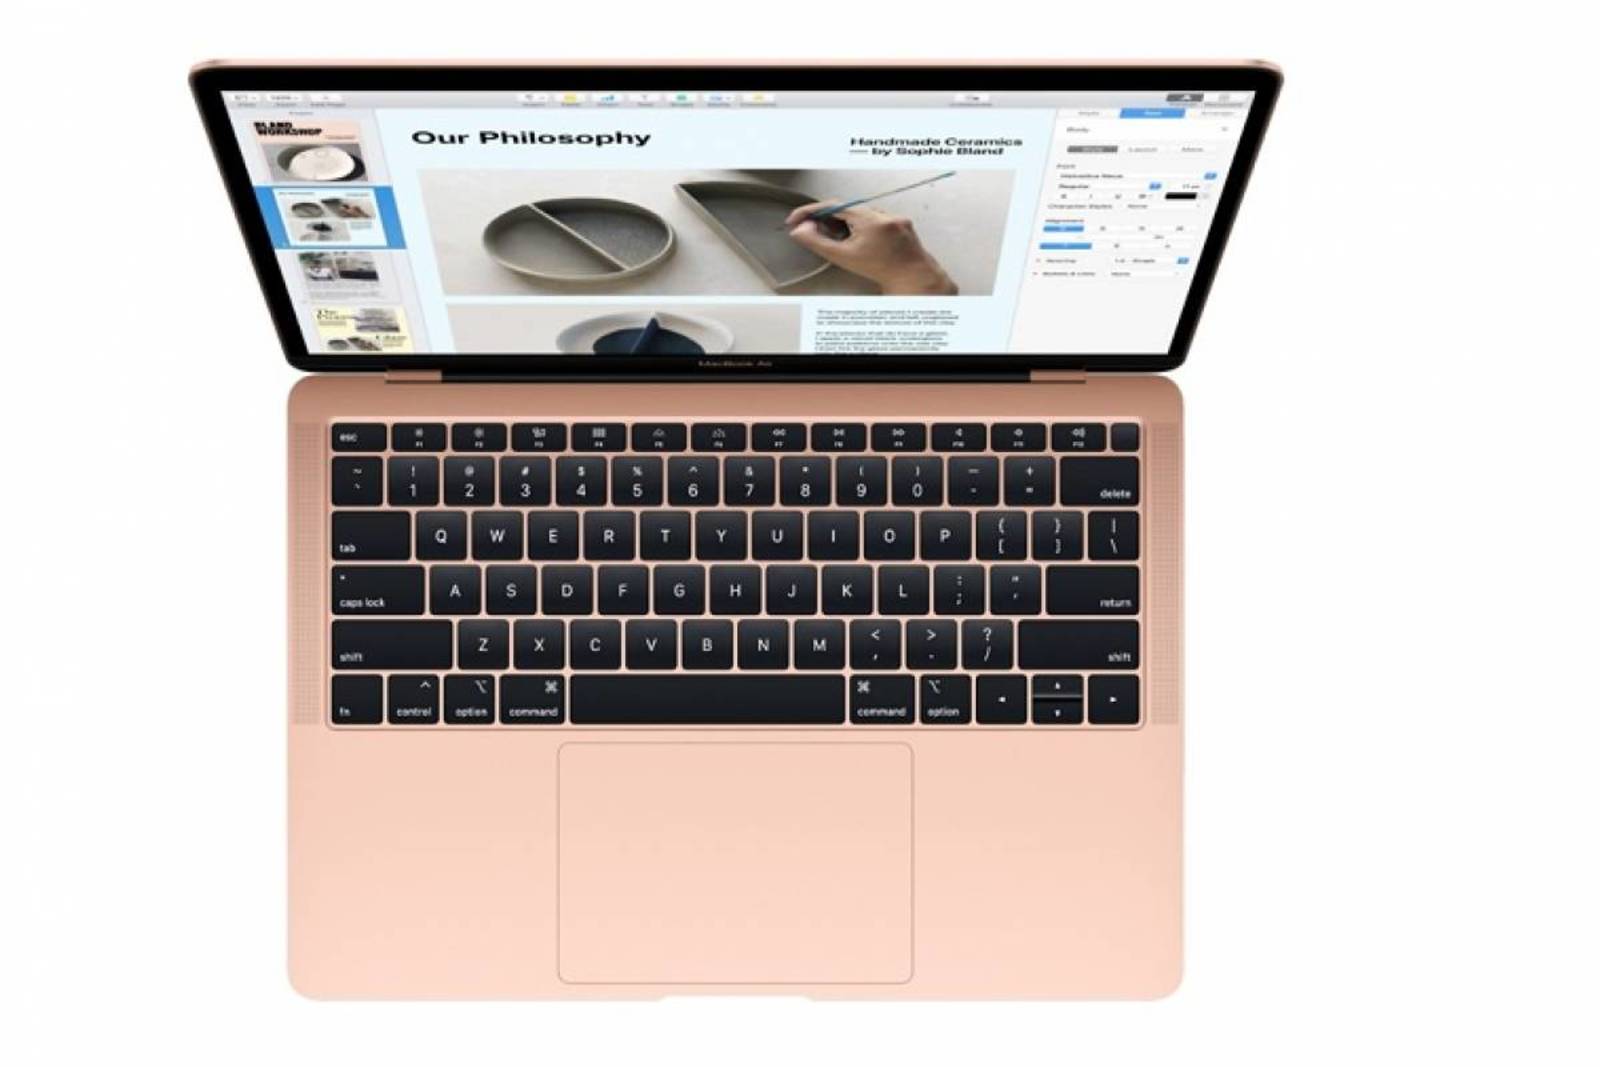 Sensibilidad. La nueva Mac incluye la conexión del teclado ahora más sensible.